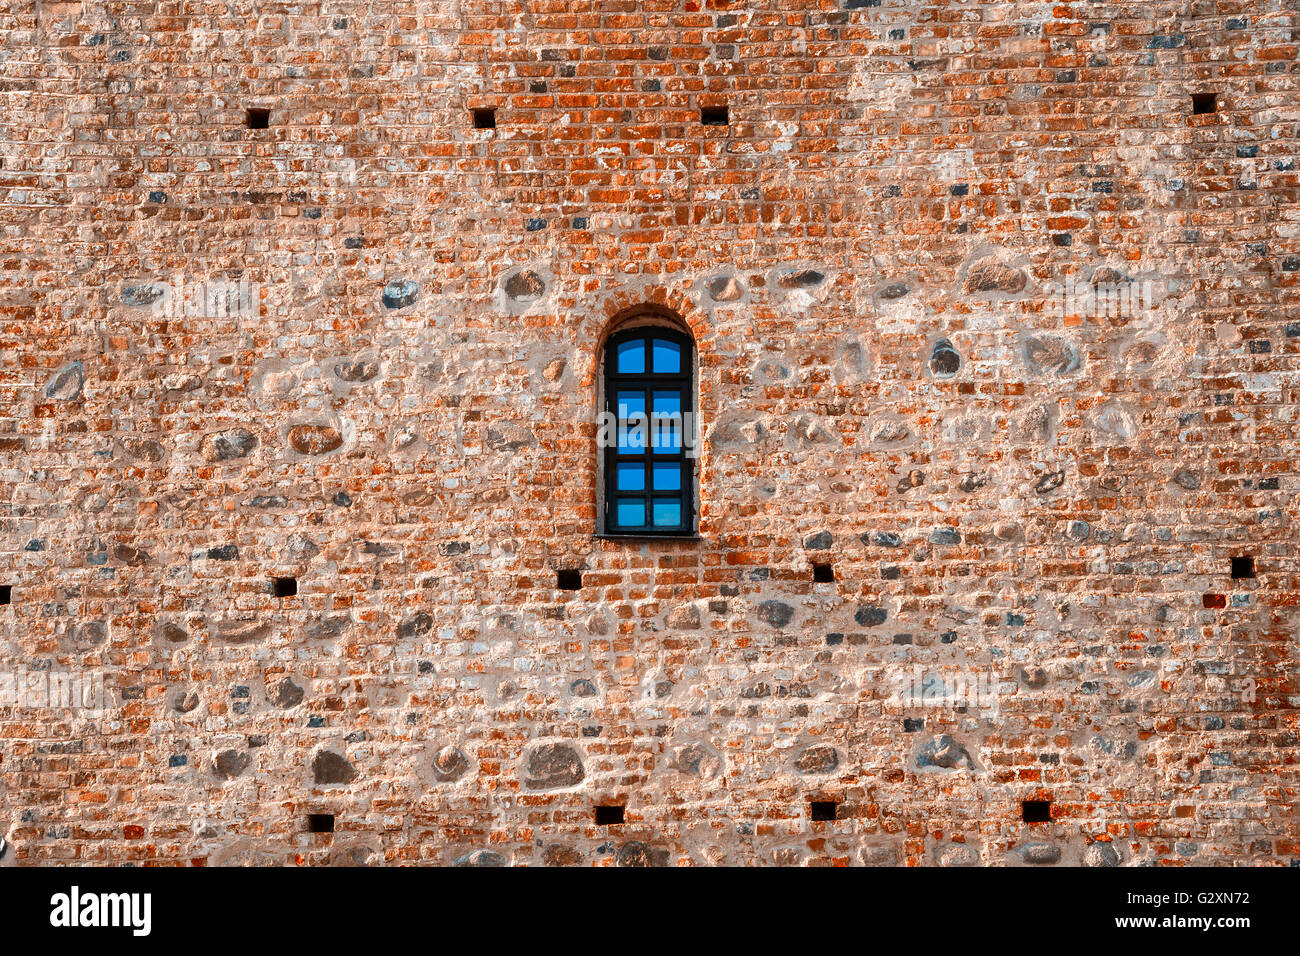 Ventana arqueada en una pared de castillo de ladrillo rojo envejecido Foto de stock